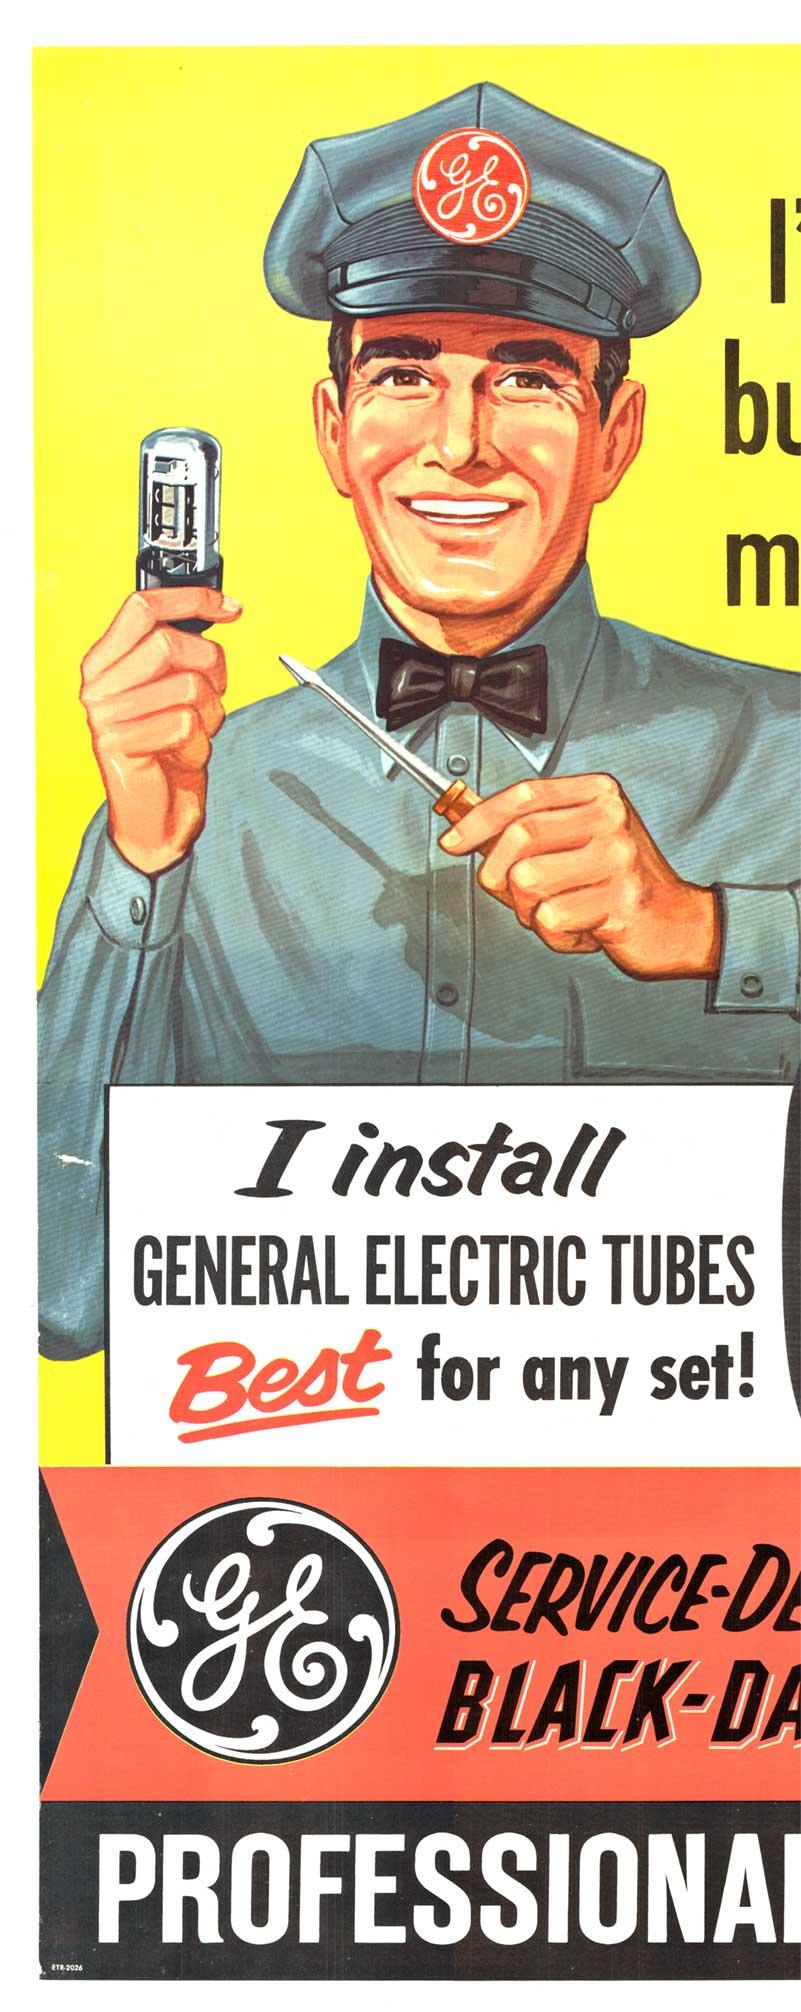 
Original General Electric Professional TV Service Mitte des Jahrhunderts modernen Vintage-Poster.
